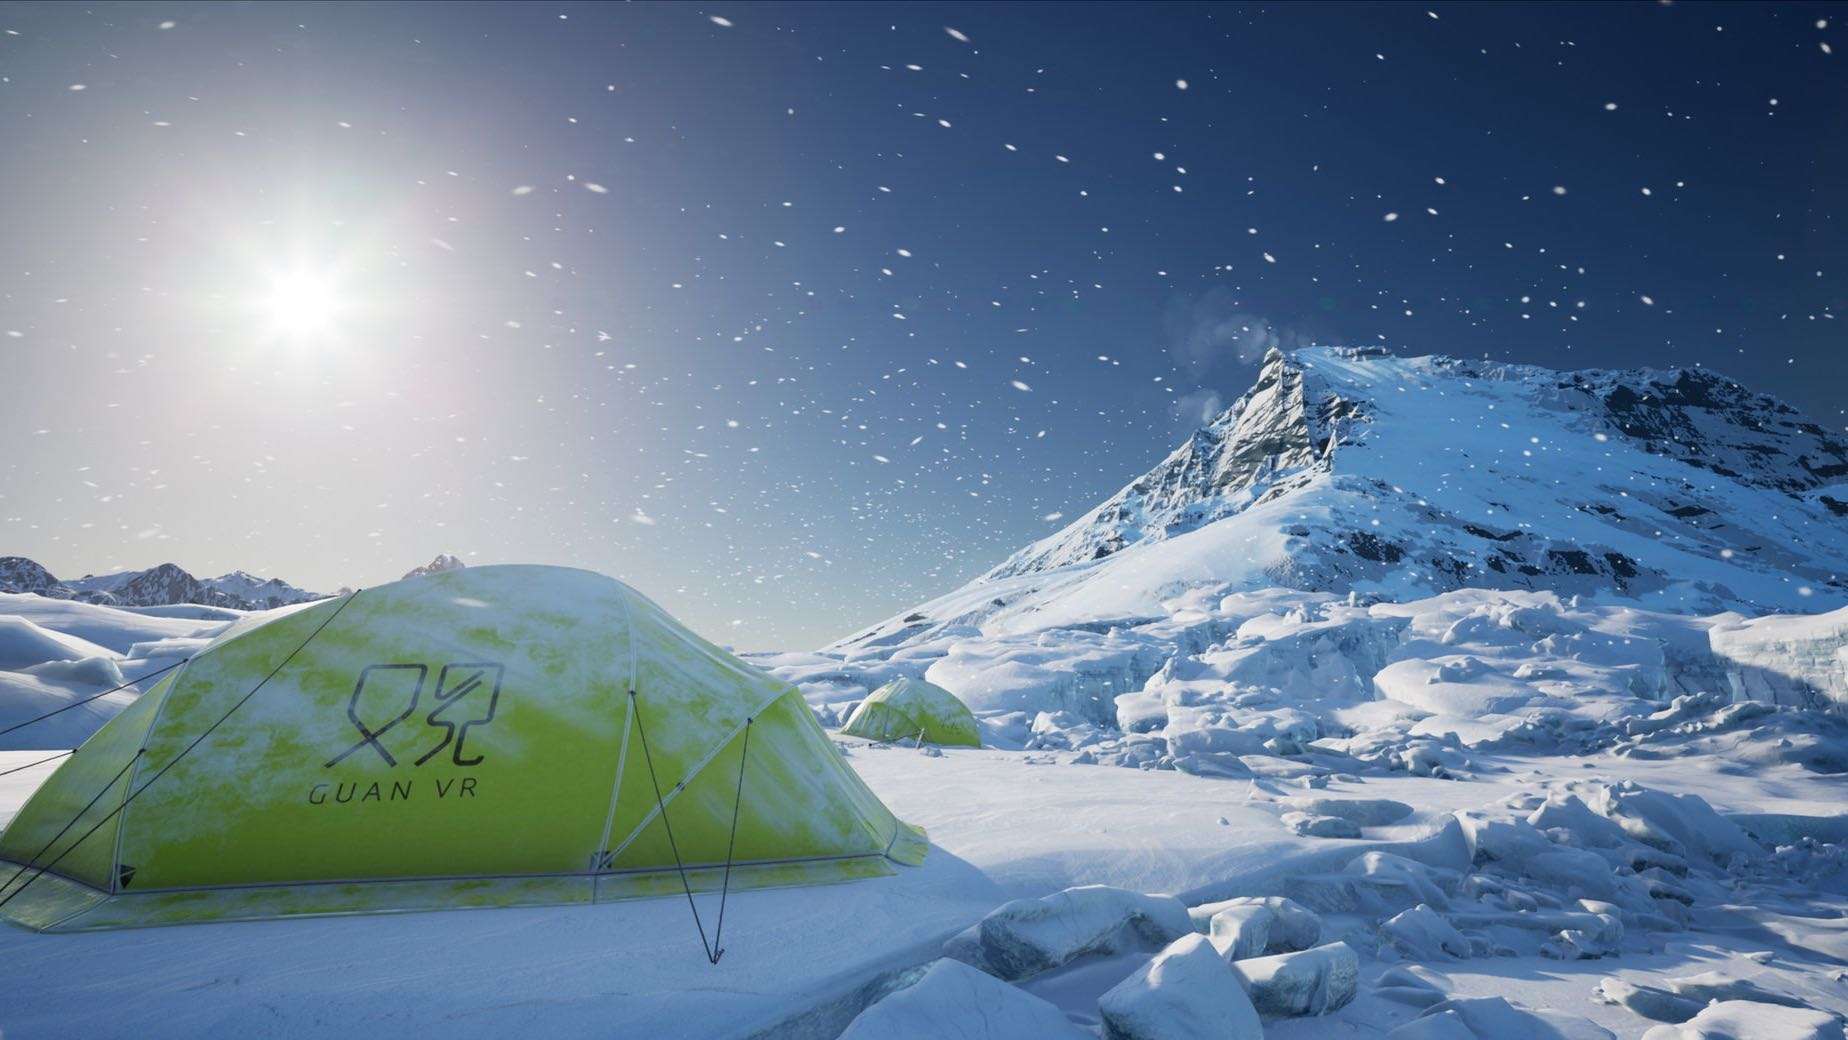 2021-BITONE“登临地球第三极”珠穆朗玛峰北坡VR沉浸式体验